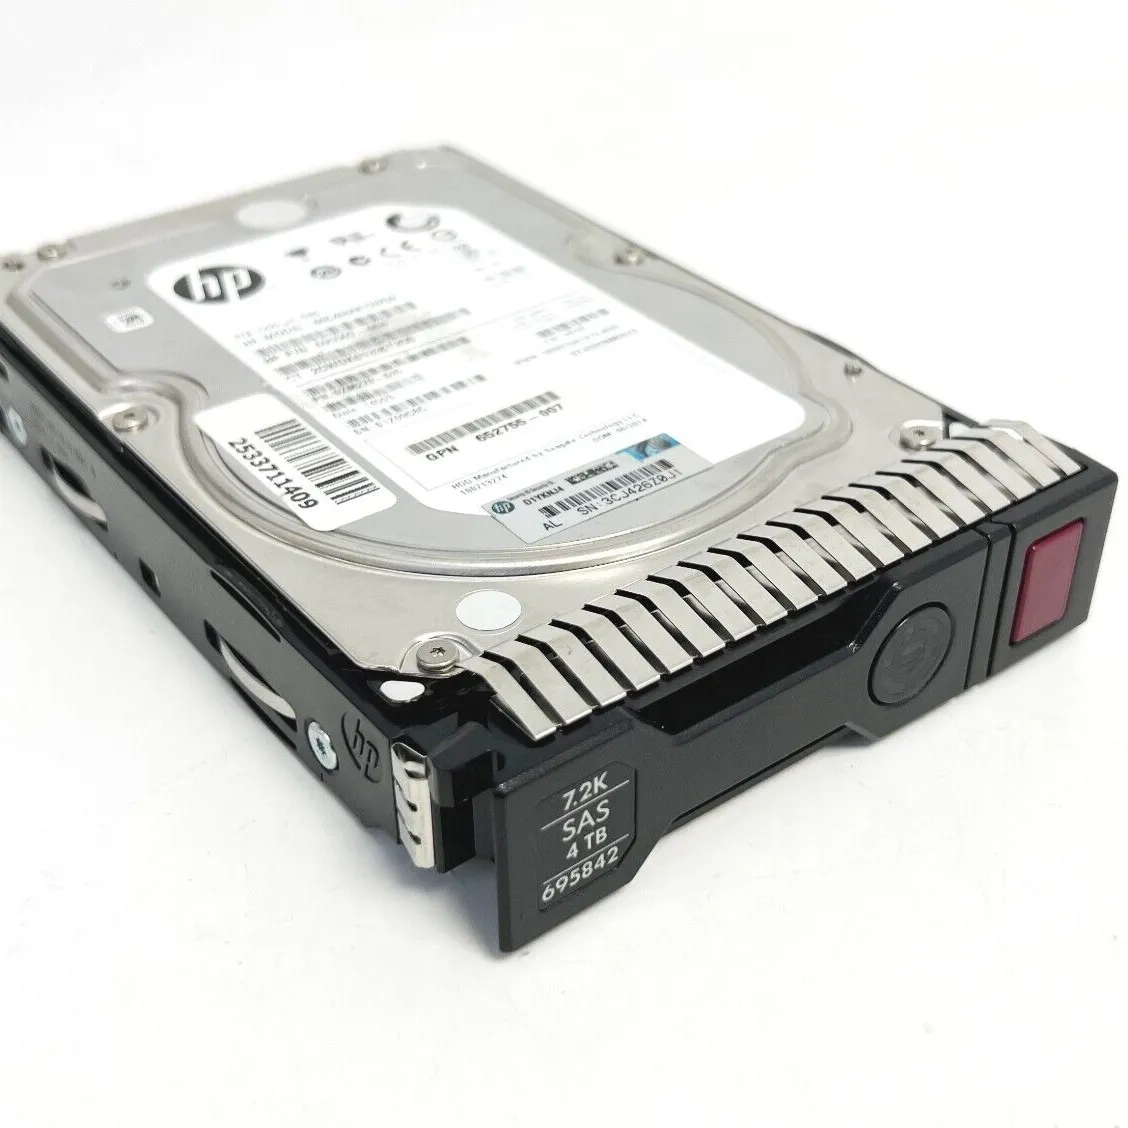 HPE 652757-B21 653948-001 2T 7.2k 3.5 SAS G8 G9 server hard disk